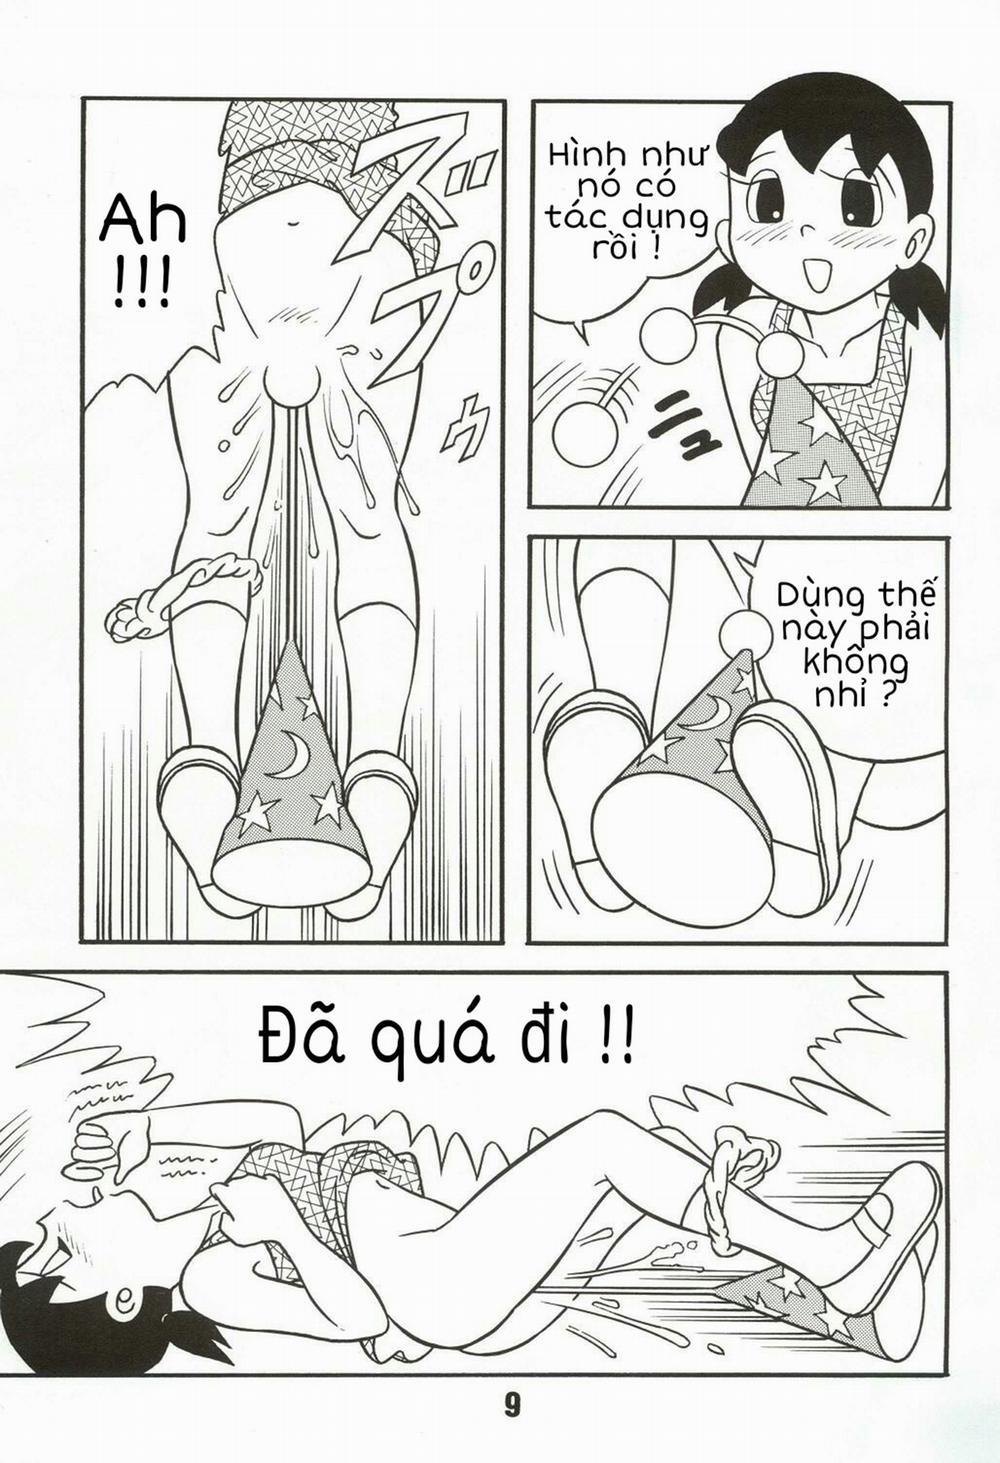 Tuyển Tập Doraemon Doujinshi 18+ Chương 4 Xuka c ph th y nh Trang 7